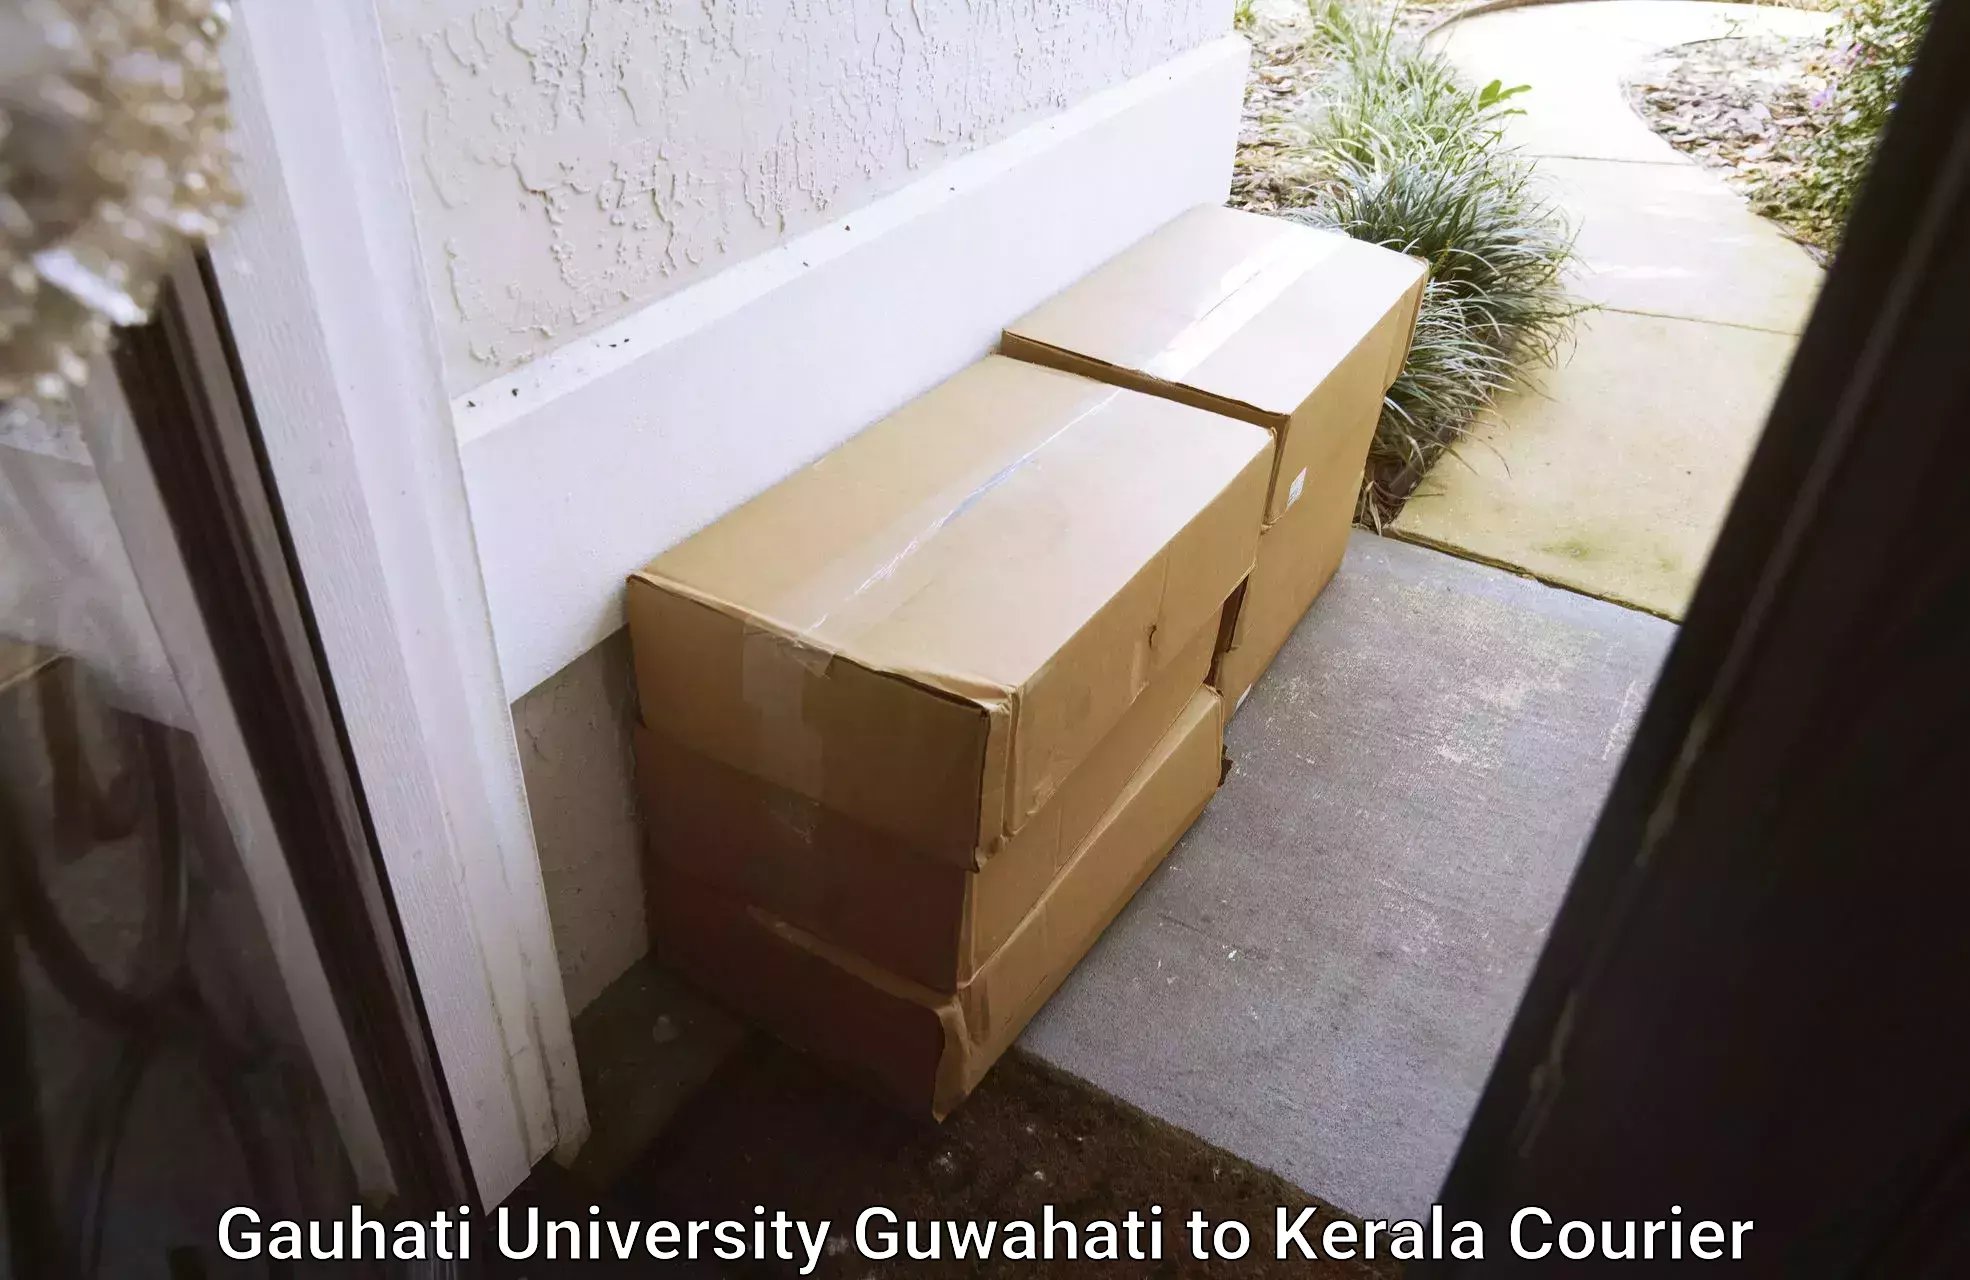 Lightweight courier in Gauhati University Guwahati to Chungathara